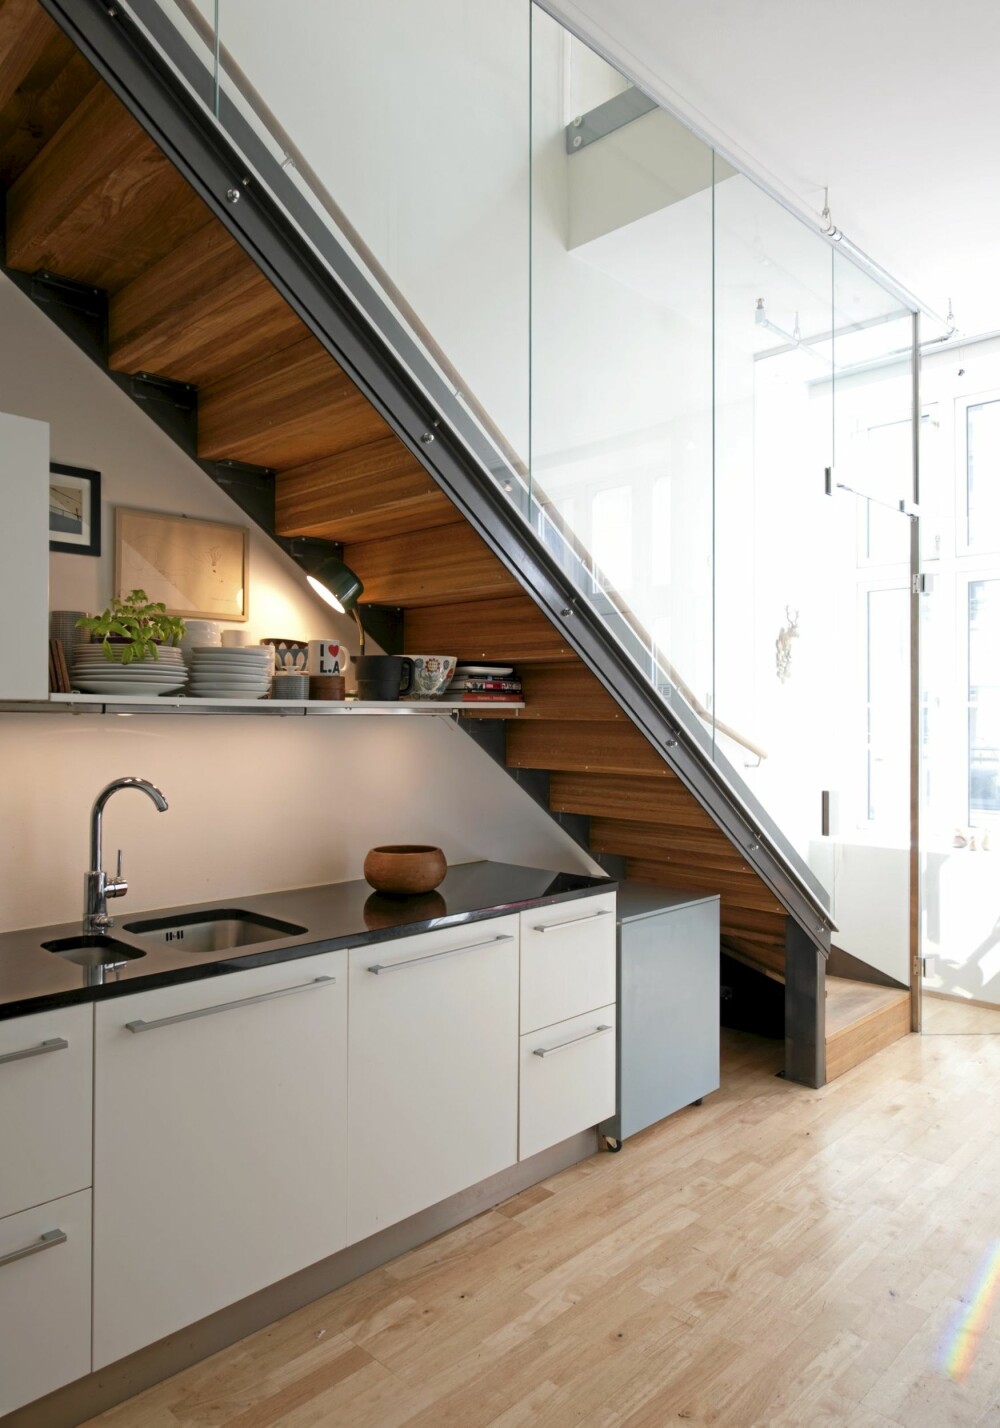 KJØKKENBENK UNDER TRAPPA: Undersiden av den tette trappen er i oljet tre, og utgjør en dekorativ innramming av kjøkkenet. Glassveggen sørger for å gi siktlinjer mellom første- og annenetasjen.